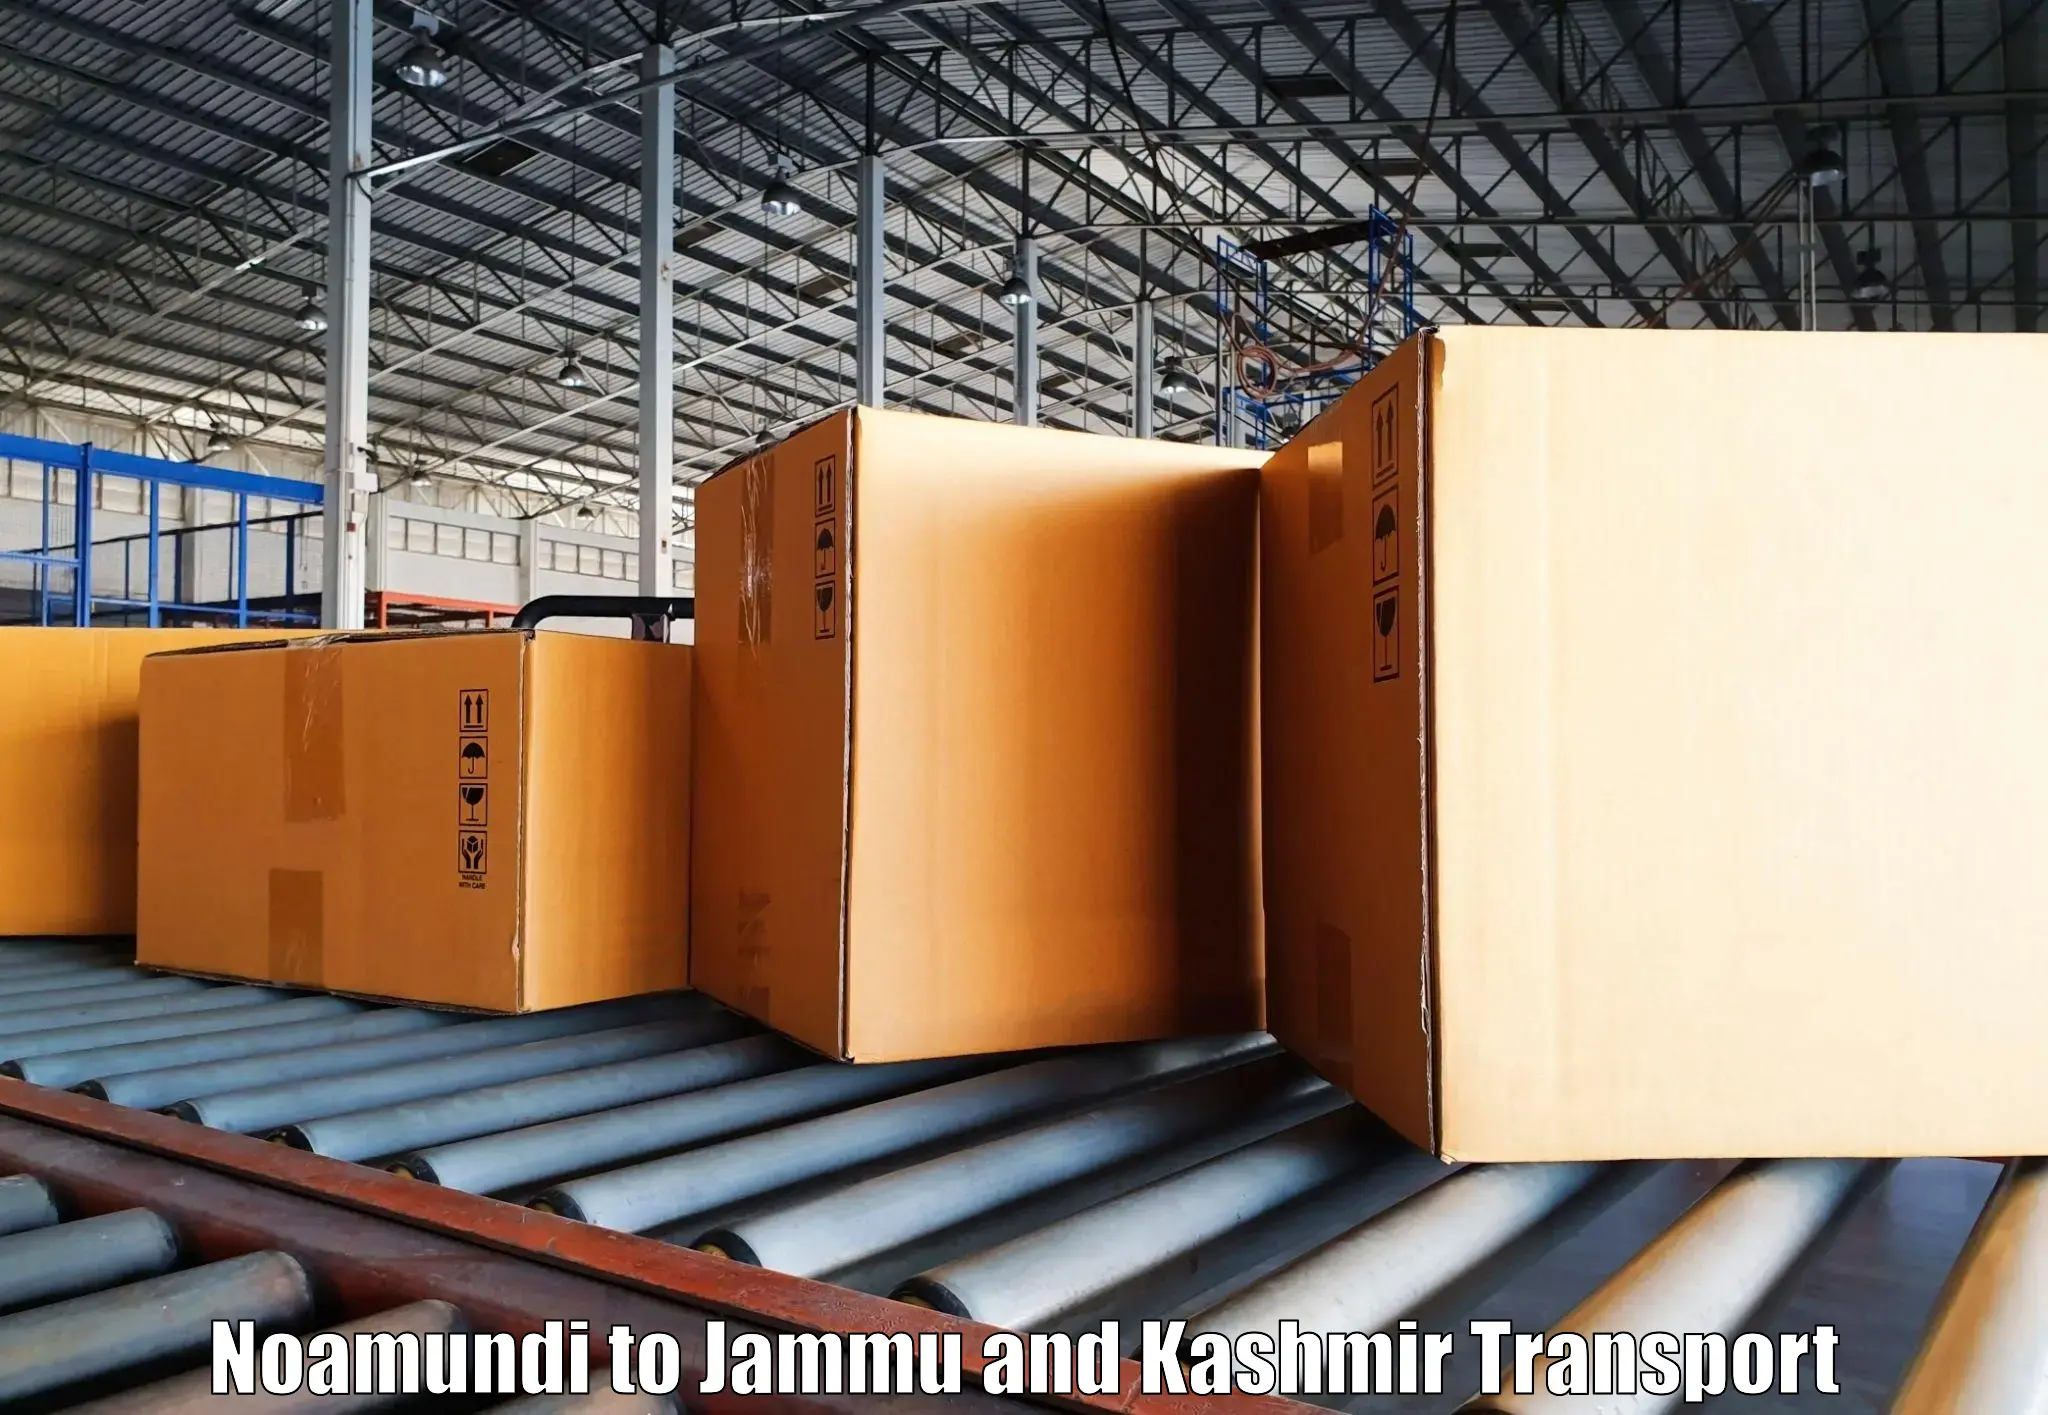 Truck transport companies in India Noamundi to Kulgam